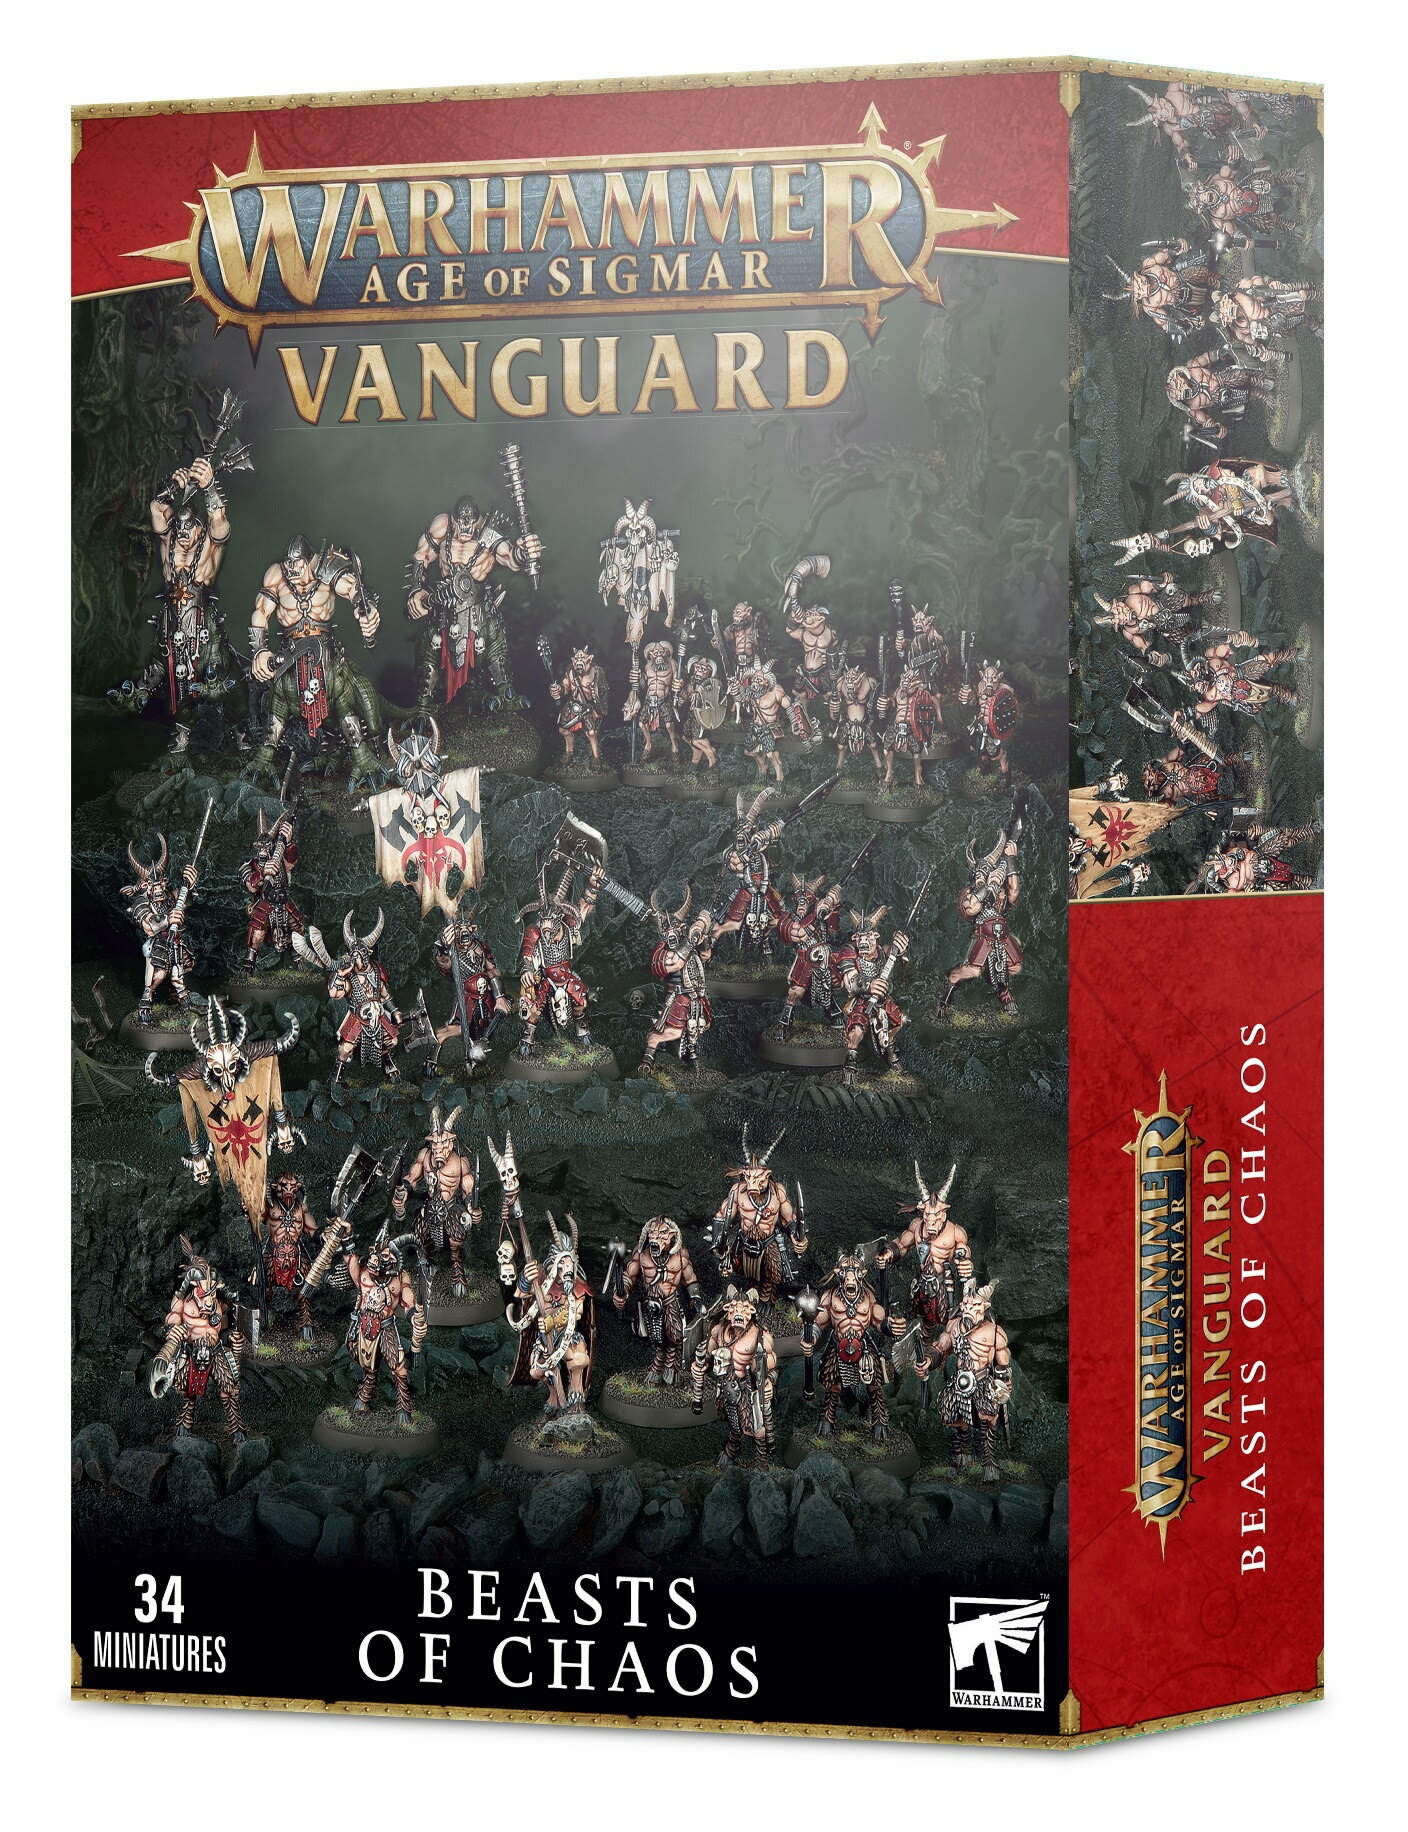  ヴァンガード：ビースト・オヴ・ケイオス  (VANGUARD: BEASTS OF CHAOS) (Warhammer Age of Sigmar)